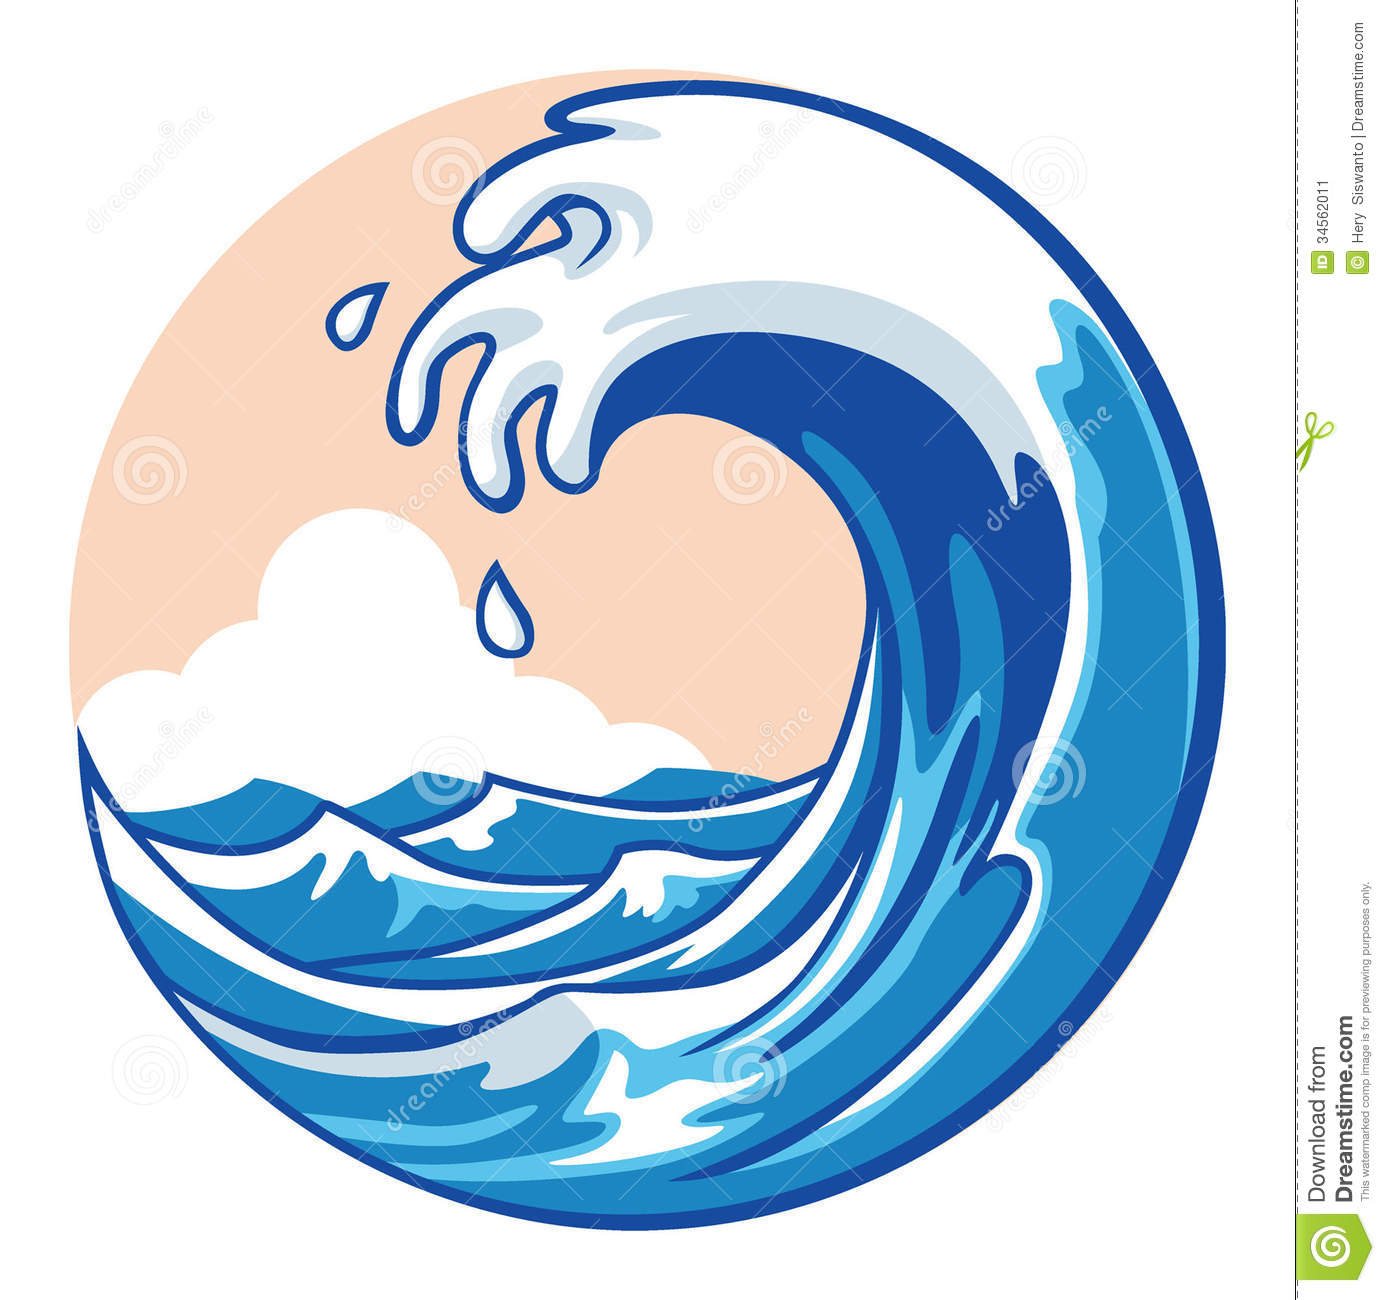 Ocean wave Stock Image